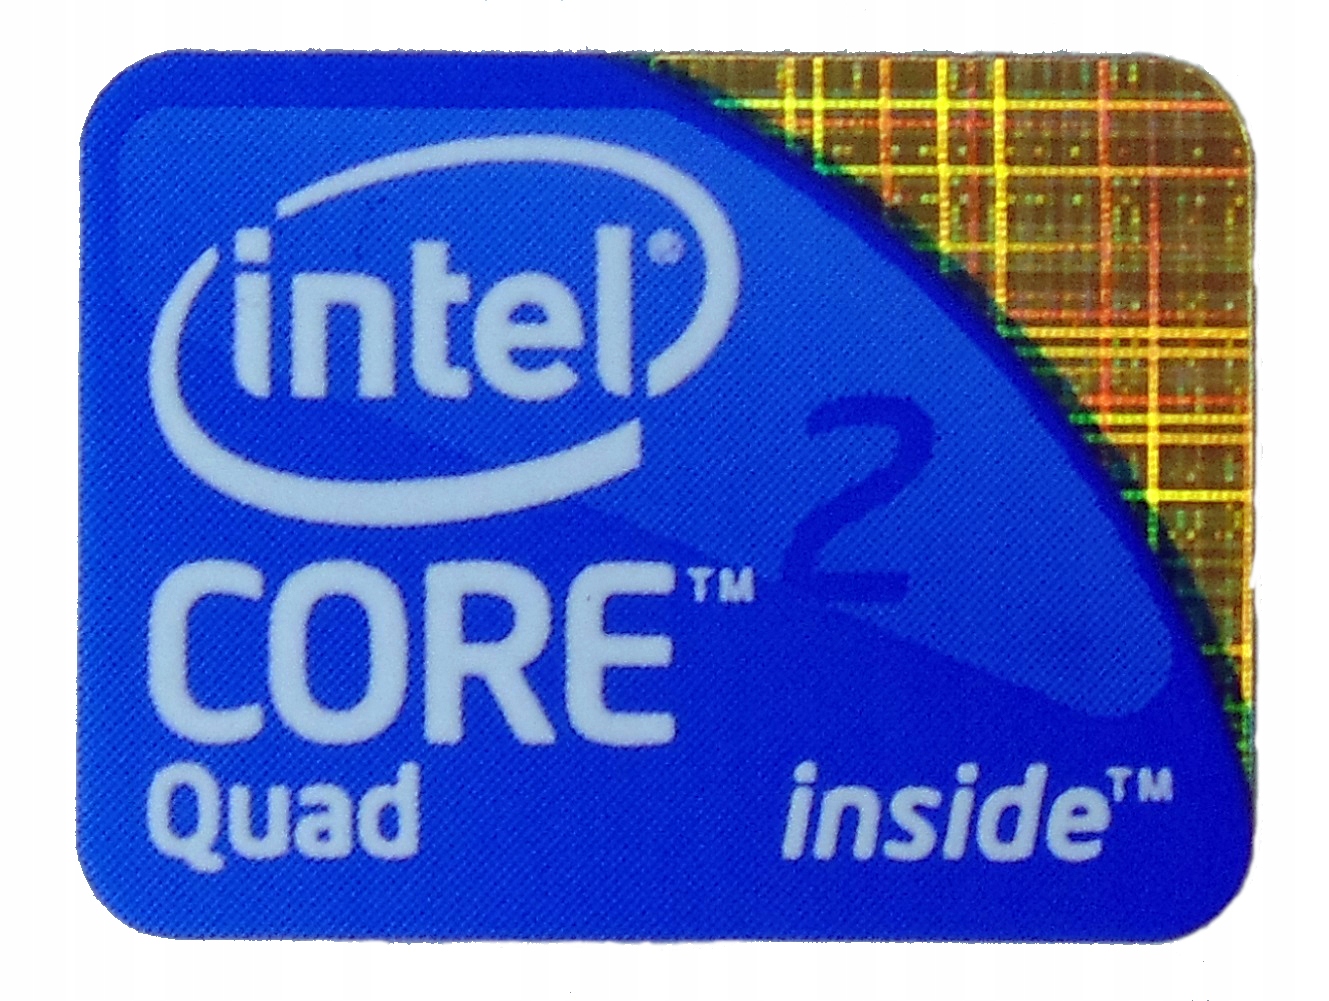 Интел quad